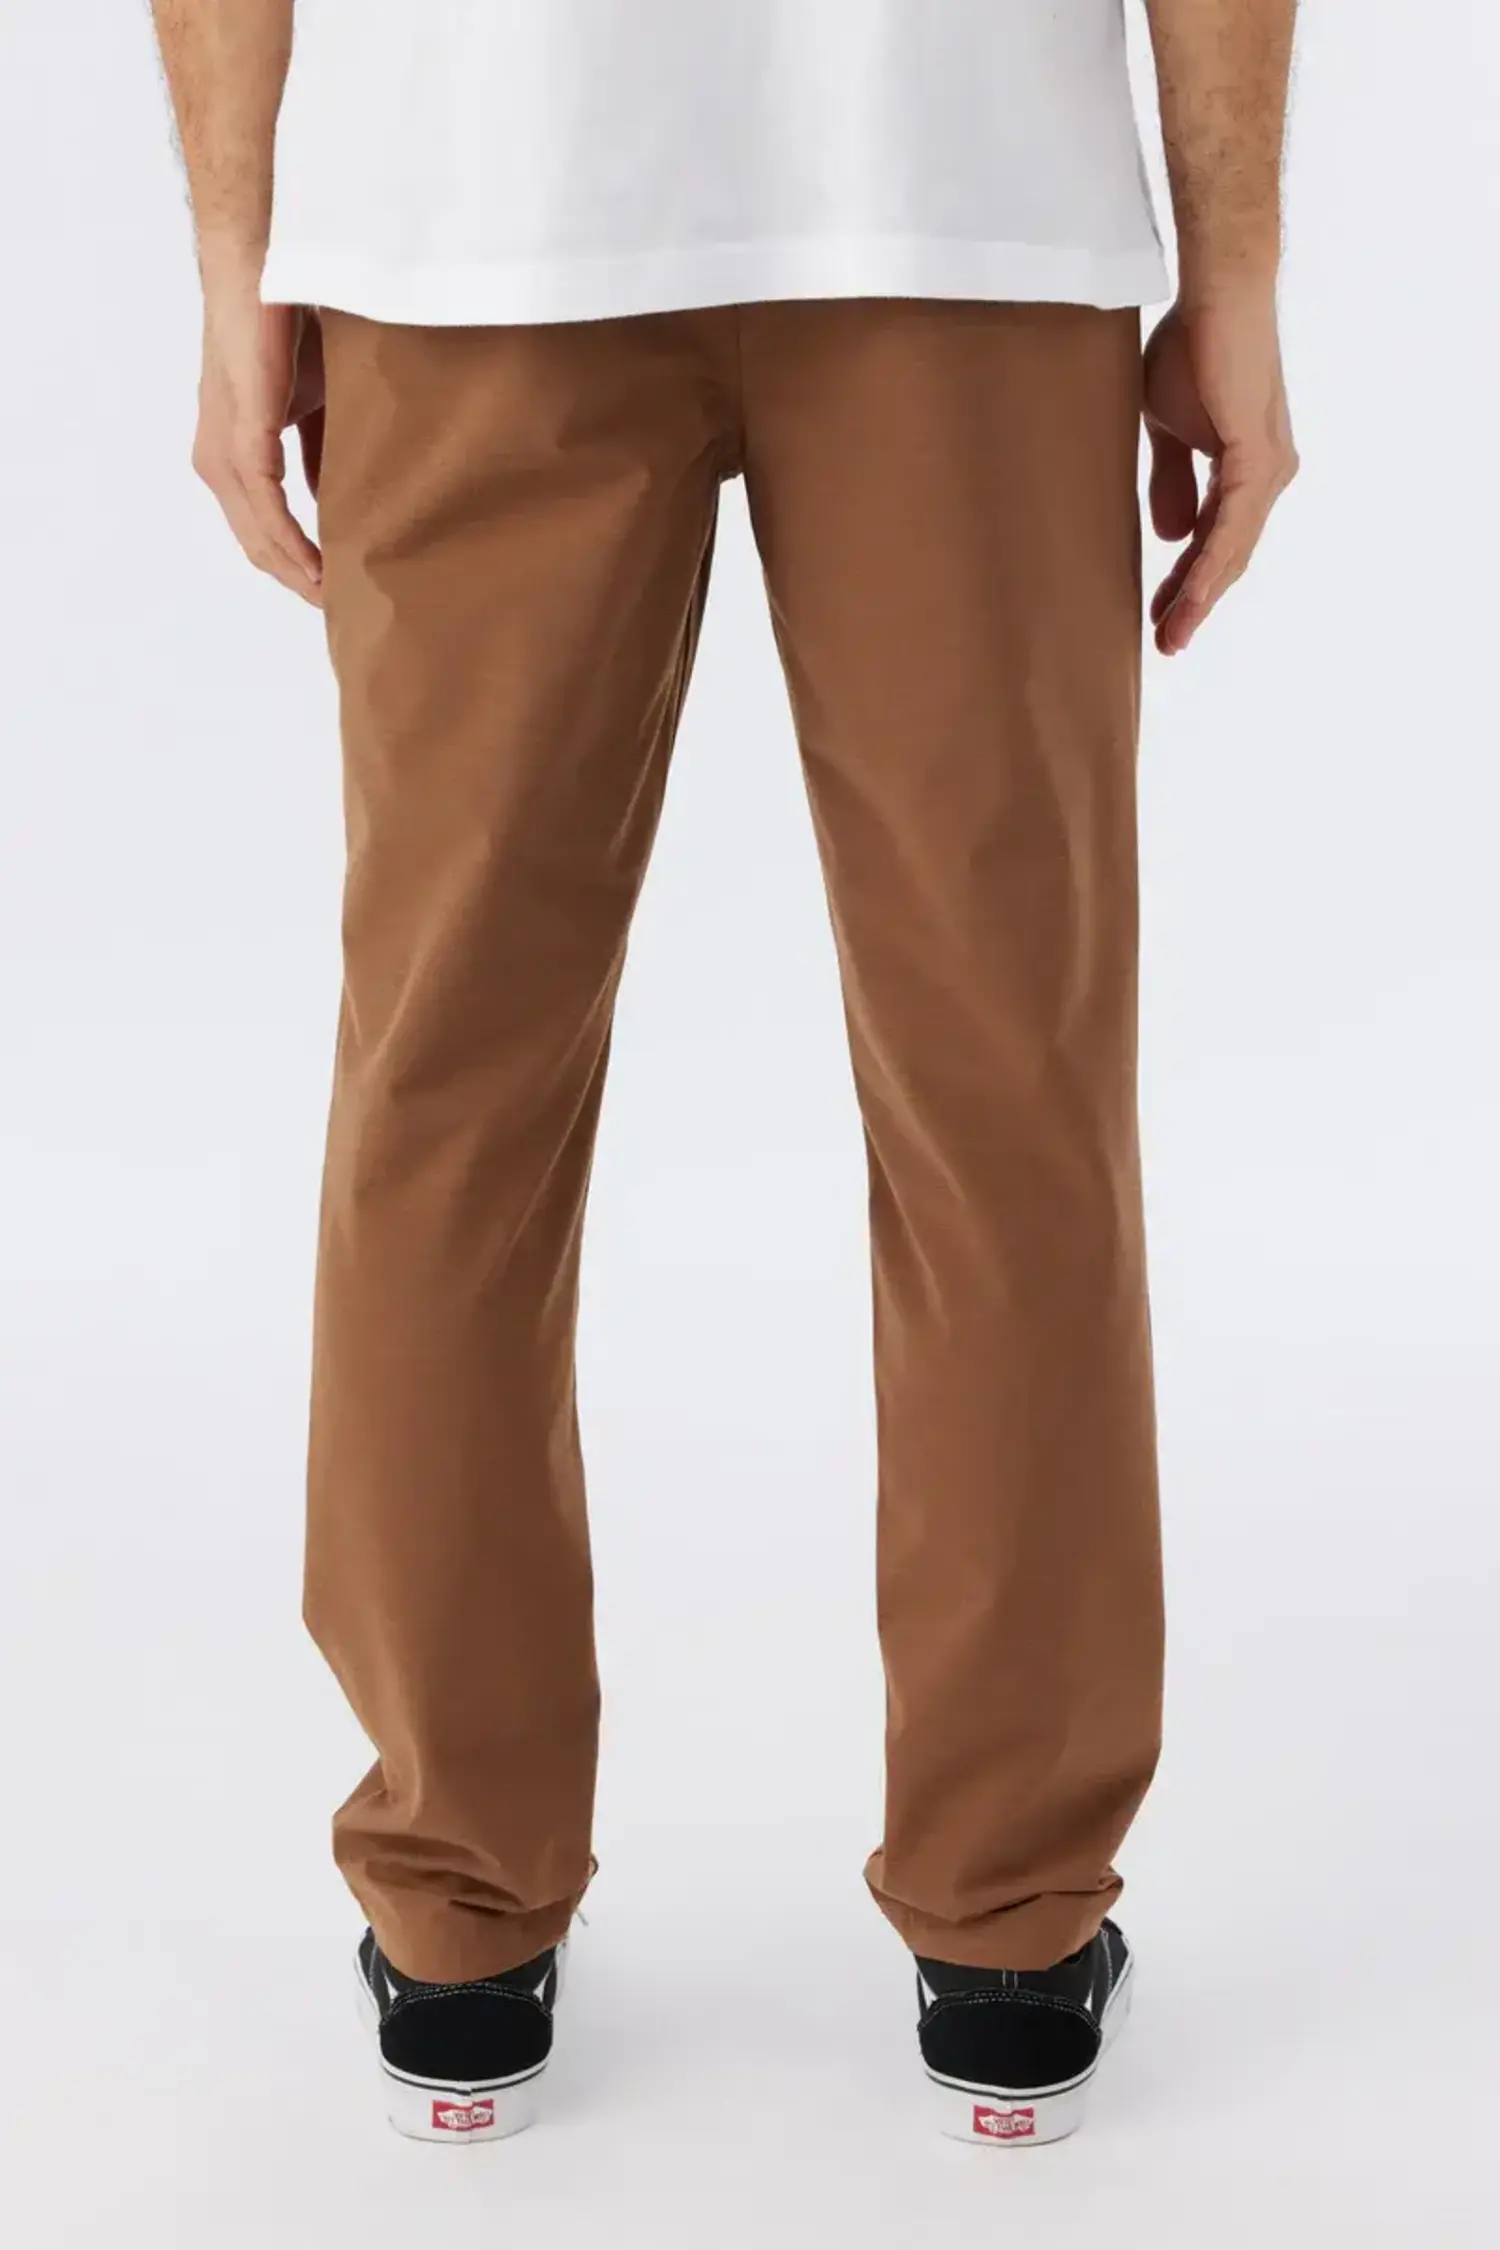 https://cdn.shoplightspeed.com/shops/627109/files/57511461/1500x4000x3/oneill-oneil-venture-e-waist-hybrid-pants.jpg